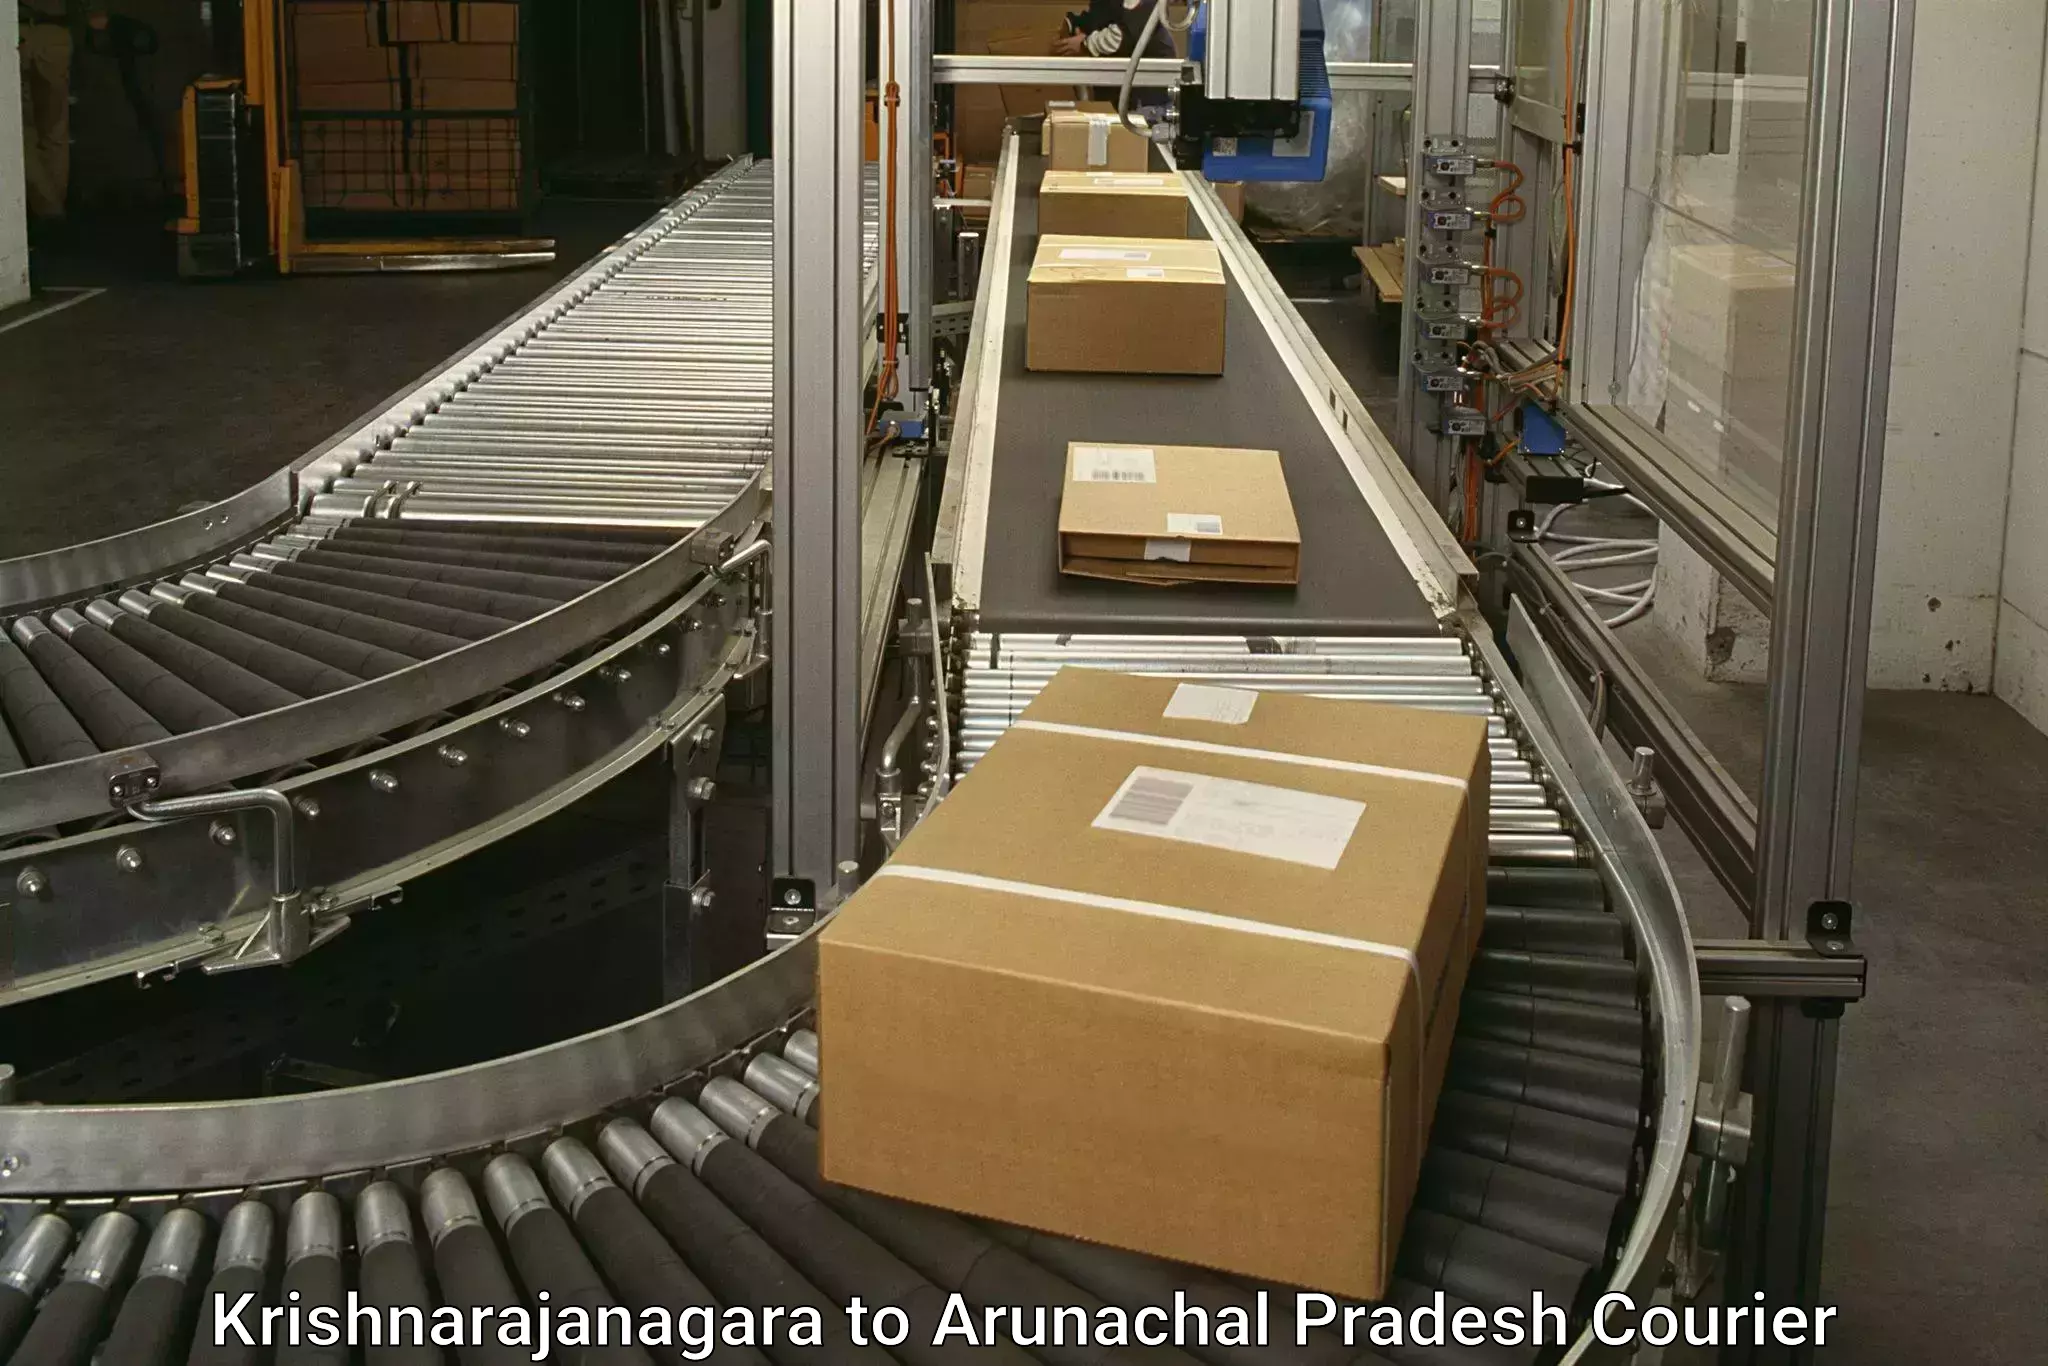 Reliable delivery network Krishnarajanagara to Aalo